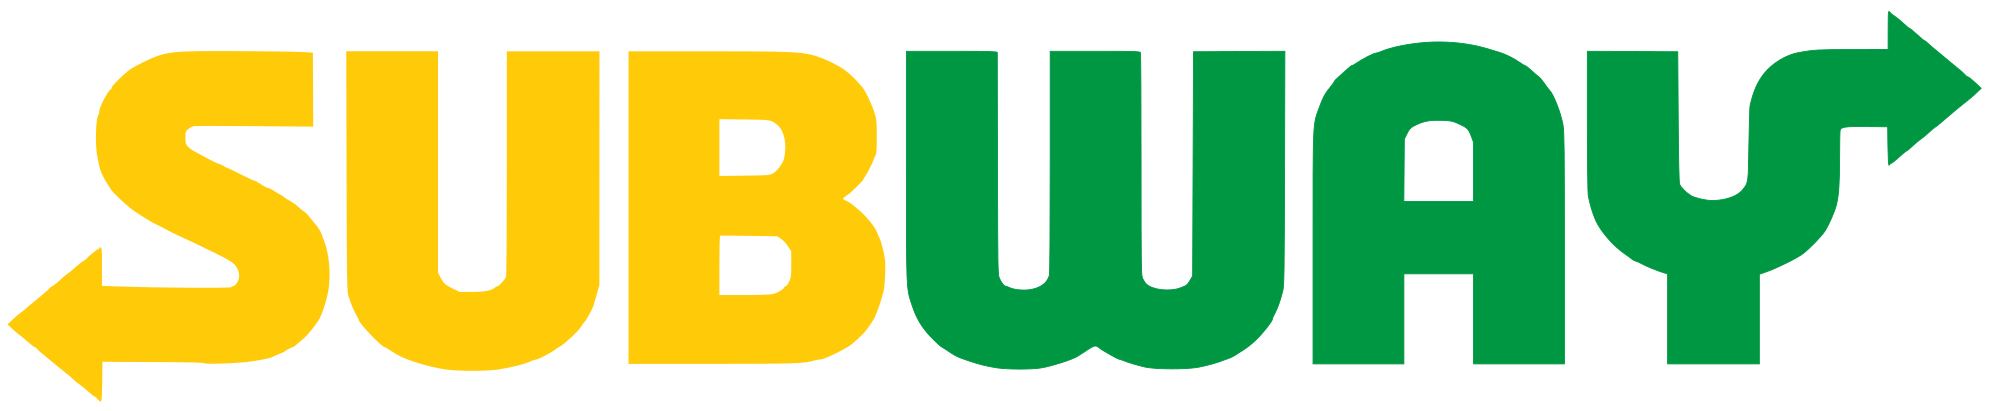 Subway Logo PNG File